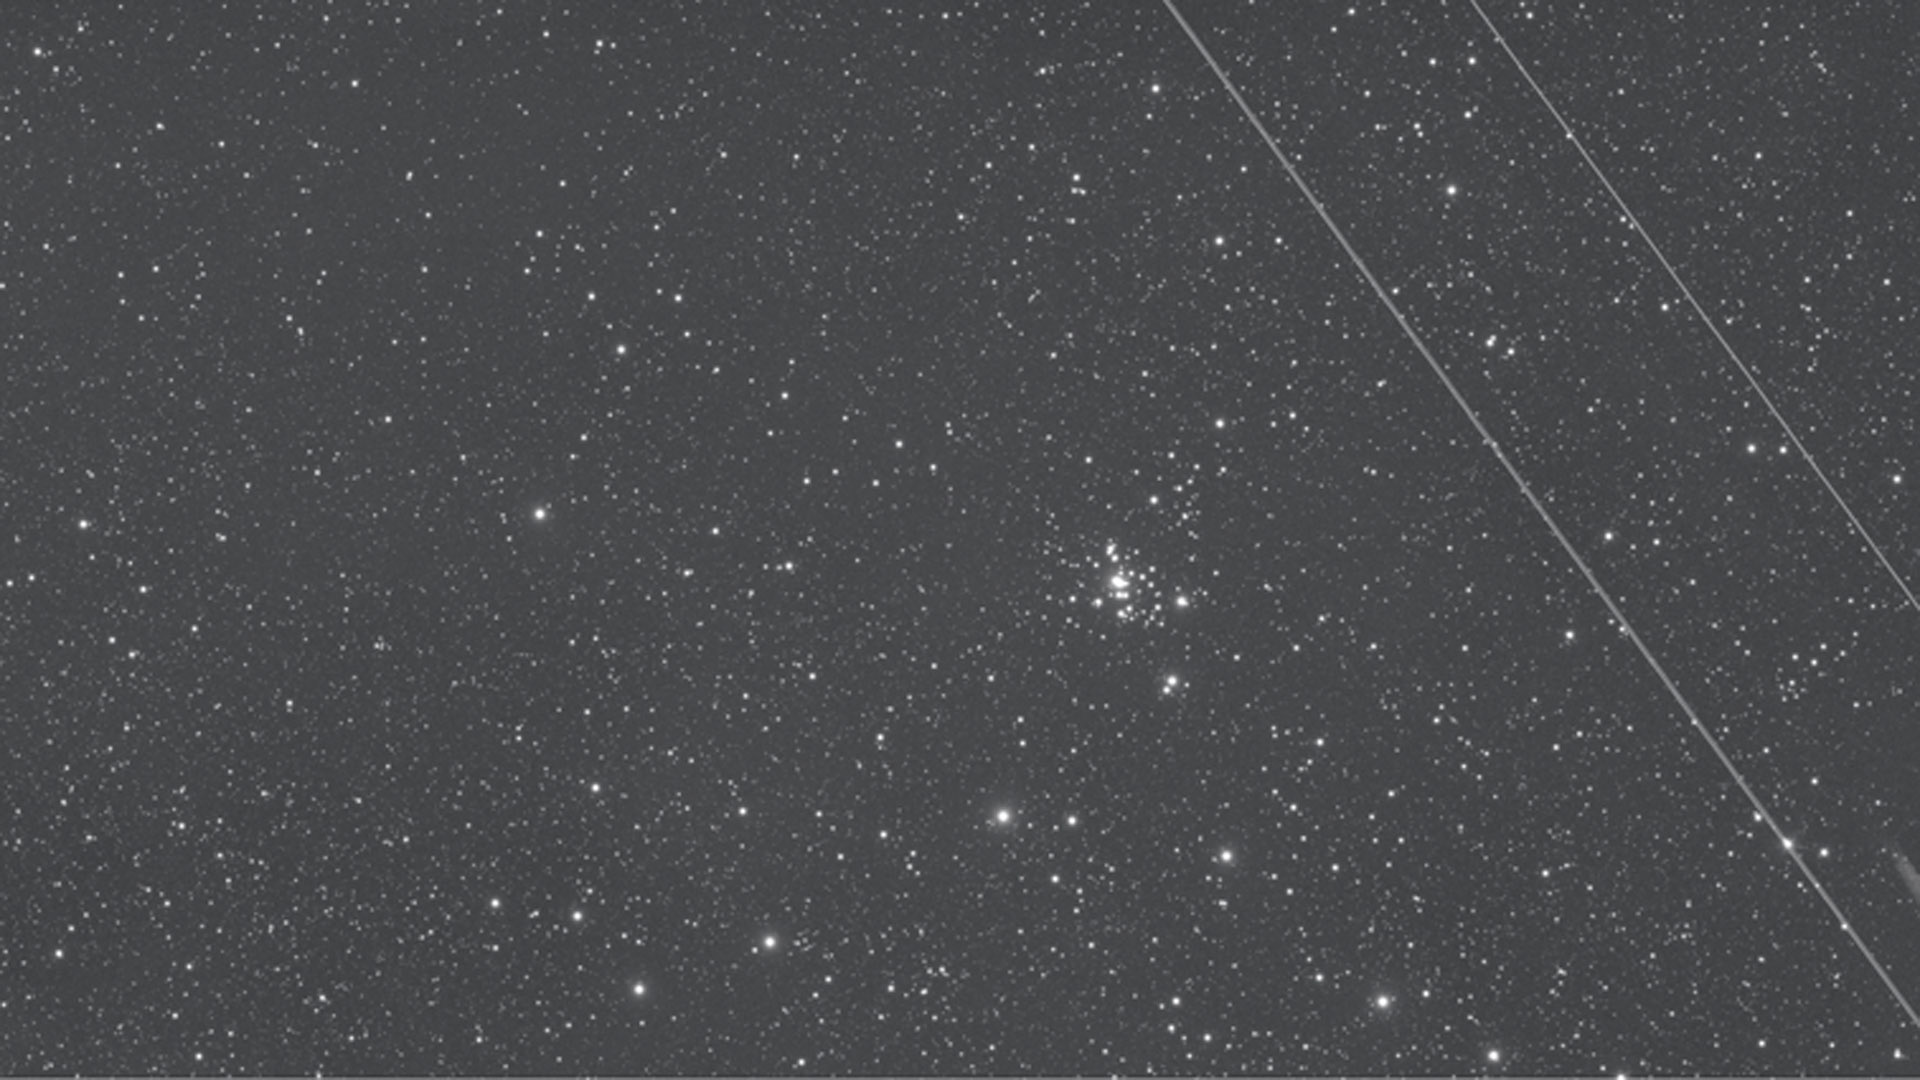 Che rabbia! Un aereo attraversa il campo visivo
durante i 15 minuti di esposizione
per riprendere NGC 1501.
Si può ancora recuperare? M. Weigand